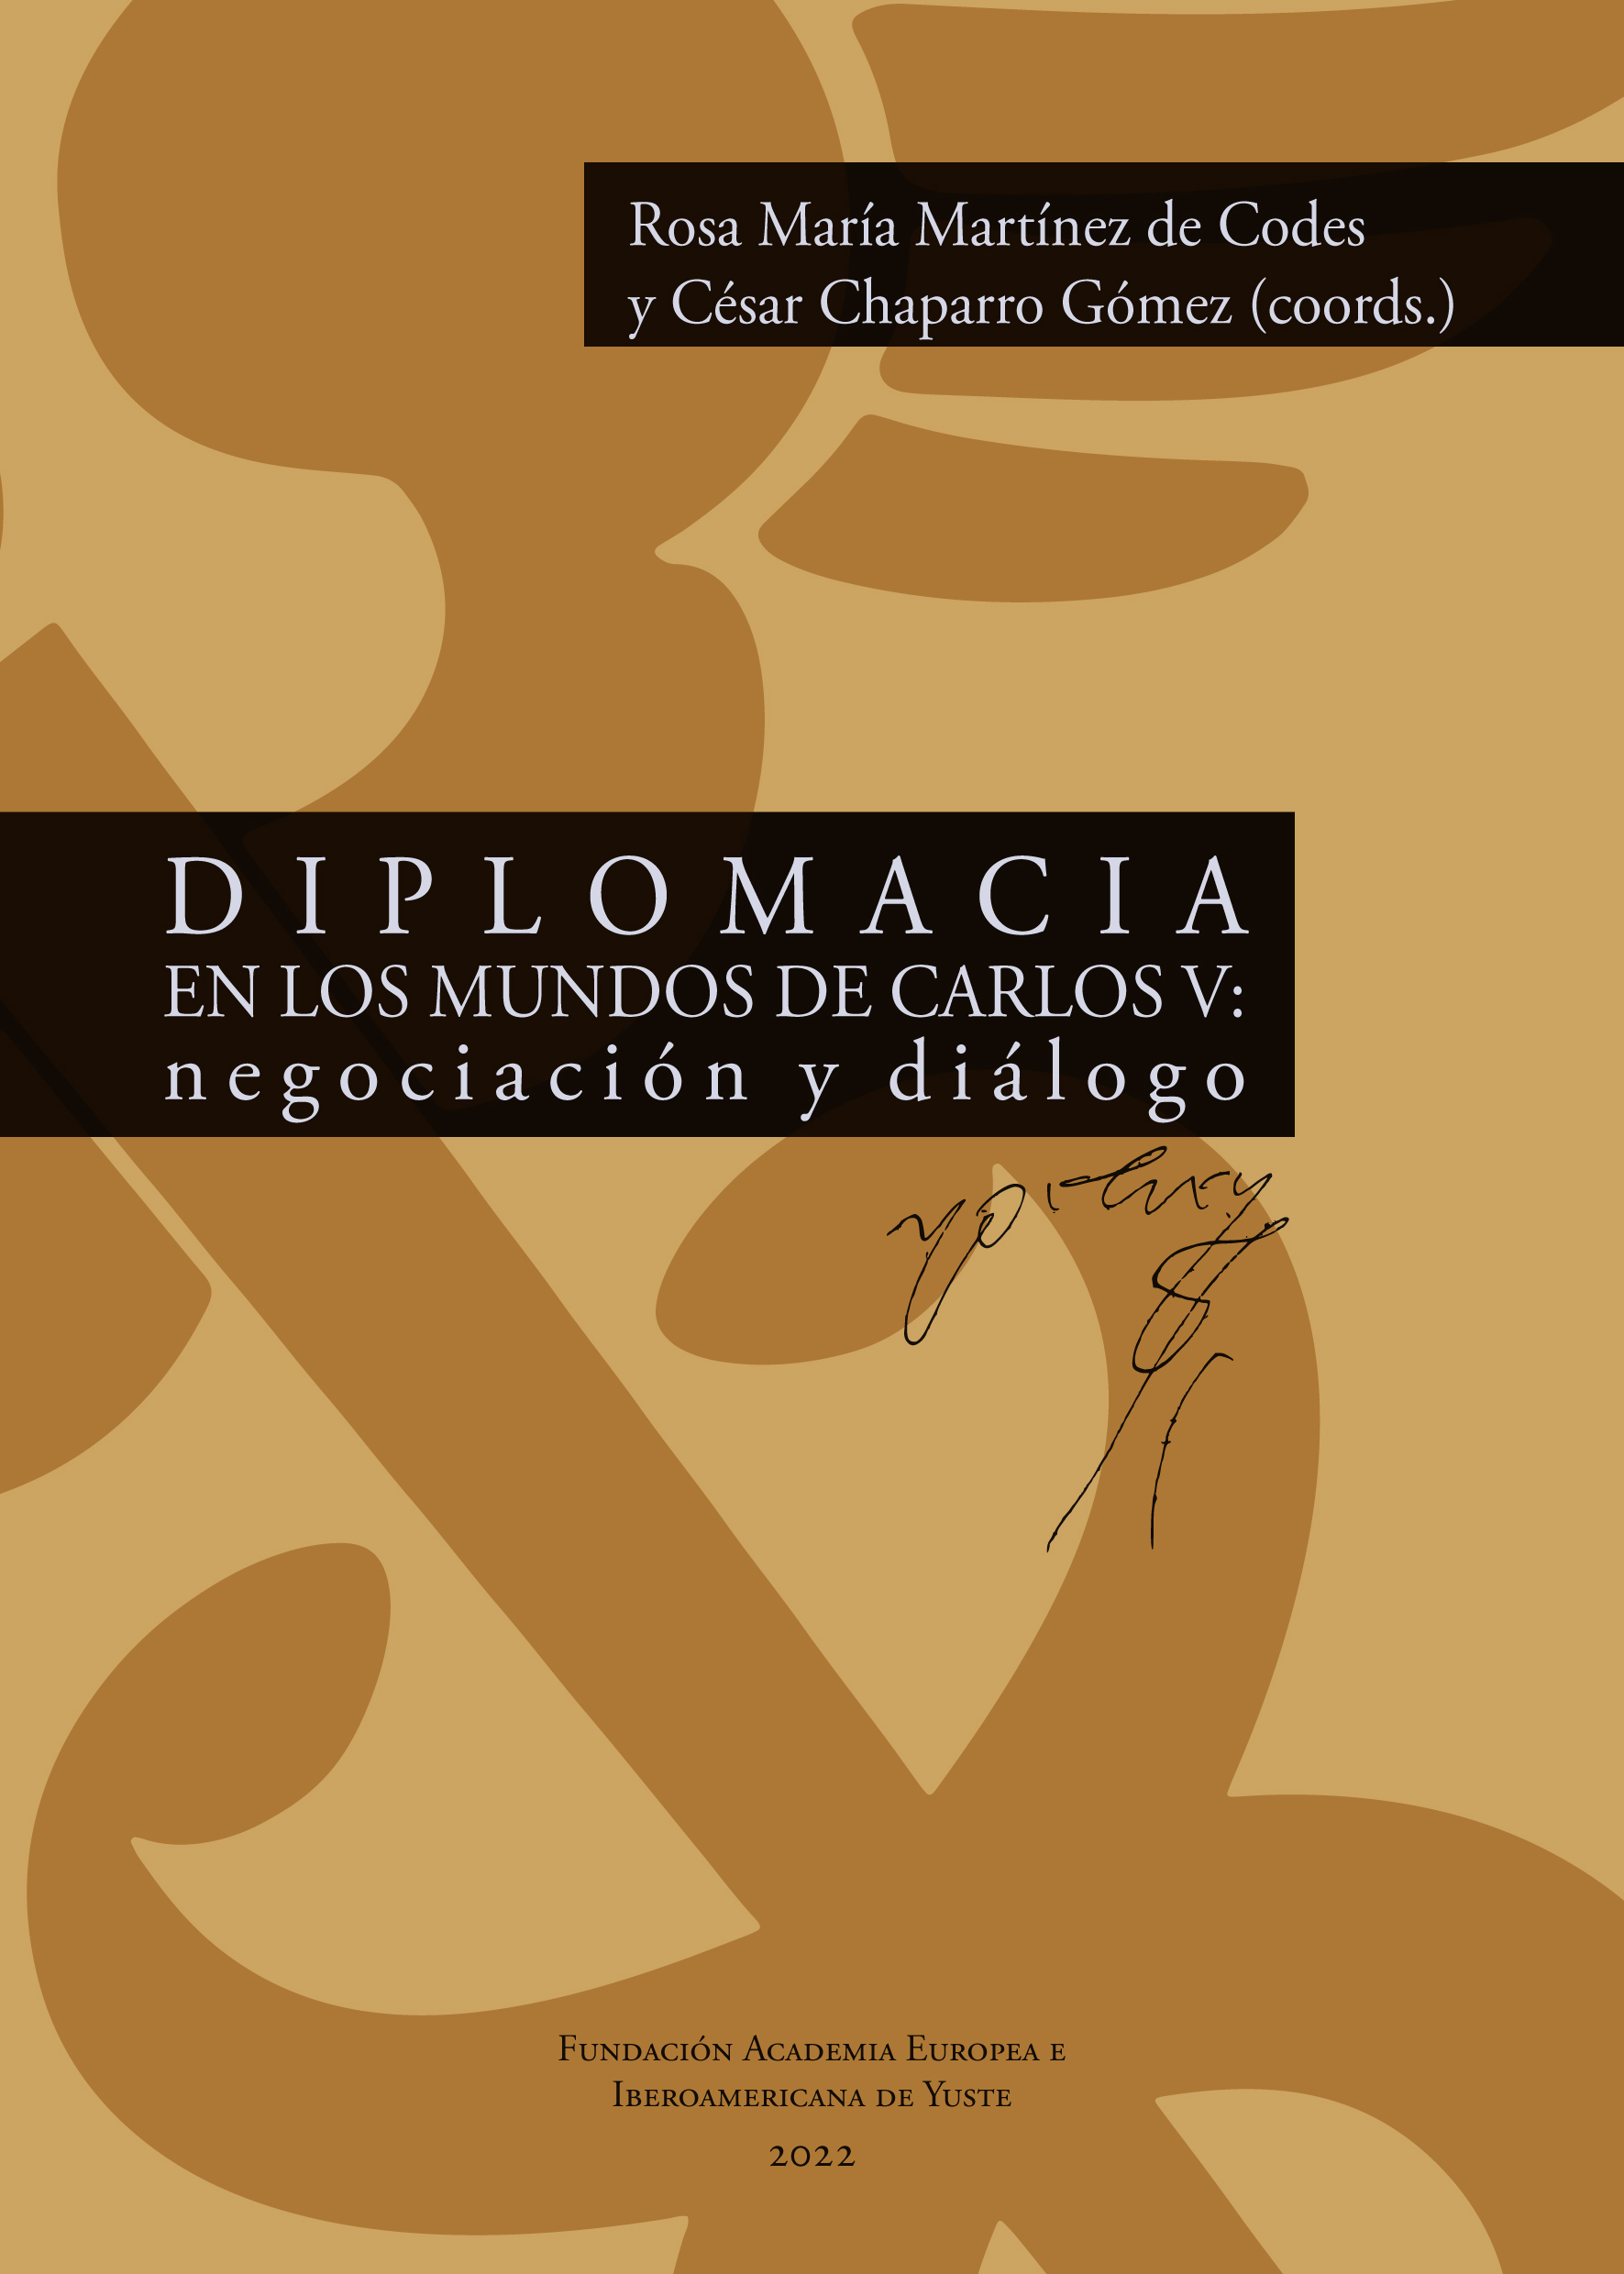 Imagen de portada del libro Diplomacia en los mundos de Carlos V